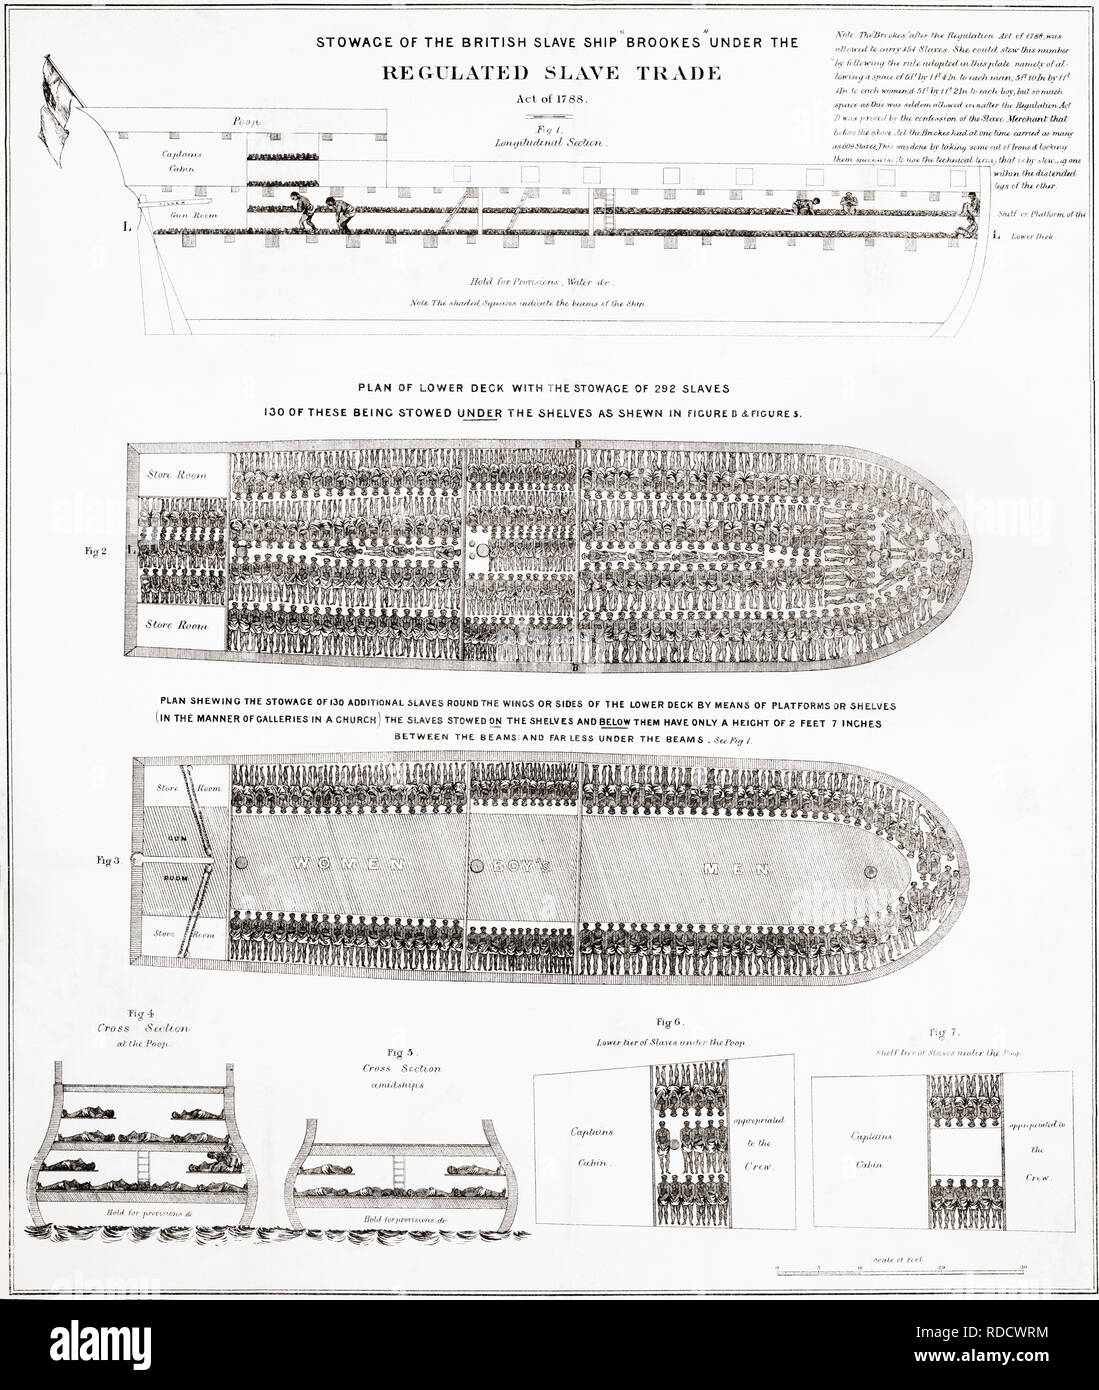 Gravur der wie Sklaven an Bord des britischen Sklavenschiff Brookes durchgeführt wurden. Es wurde erstmals im Jahre 1788 veröffentlicht. Stockfoto